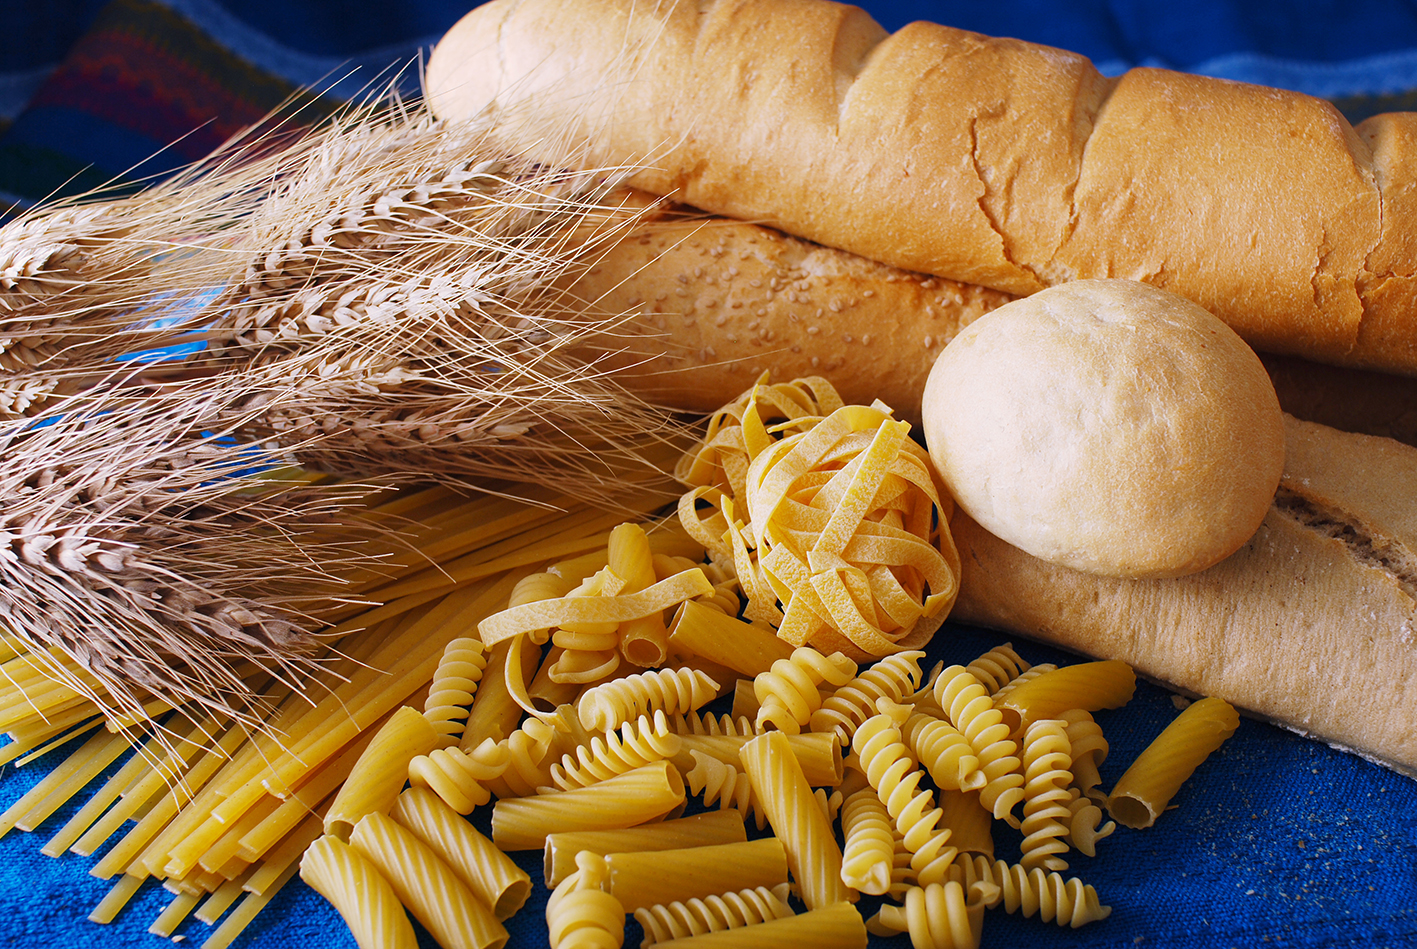 El trigo: ¿Beneficioso o venenoso?